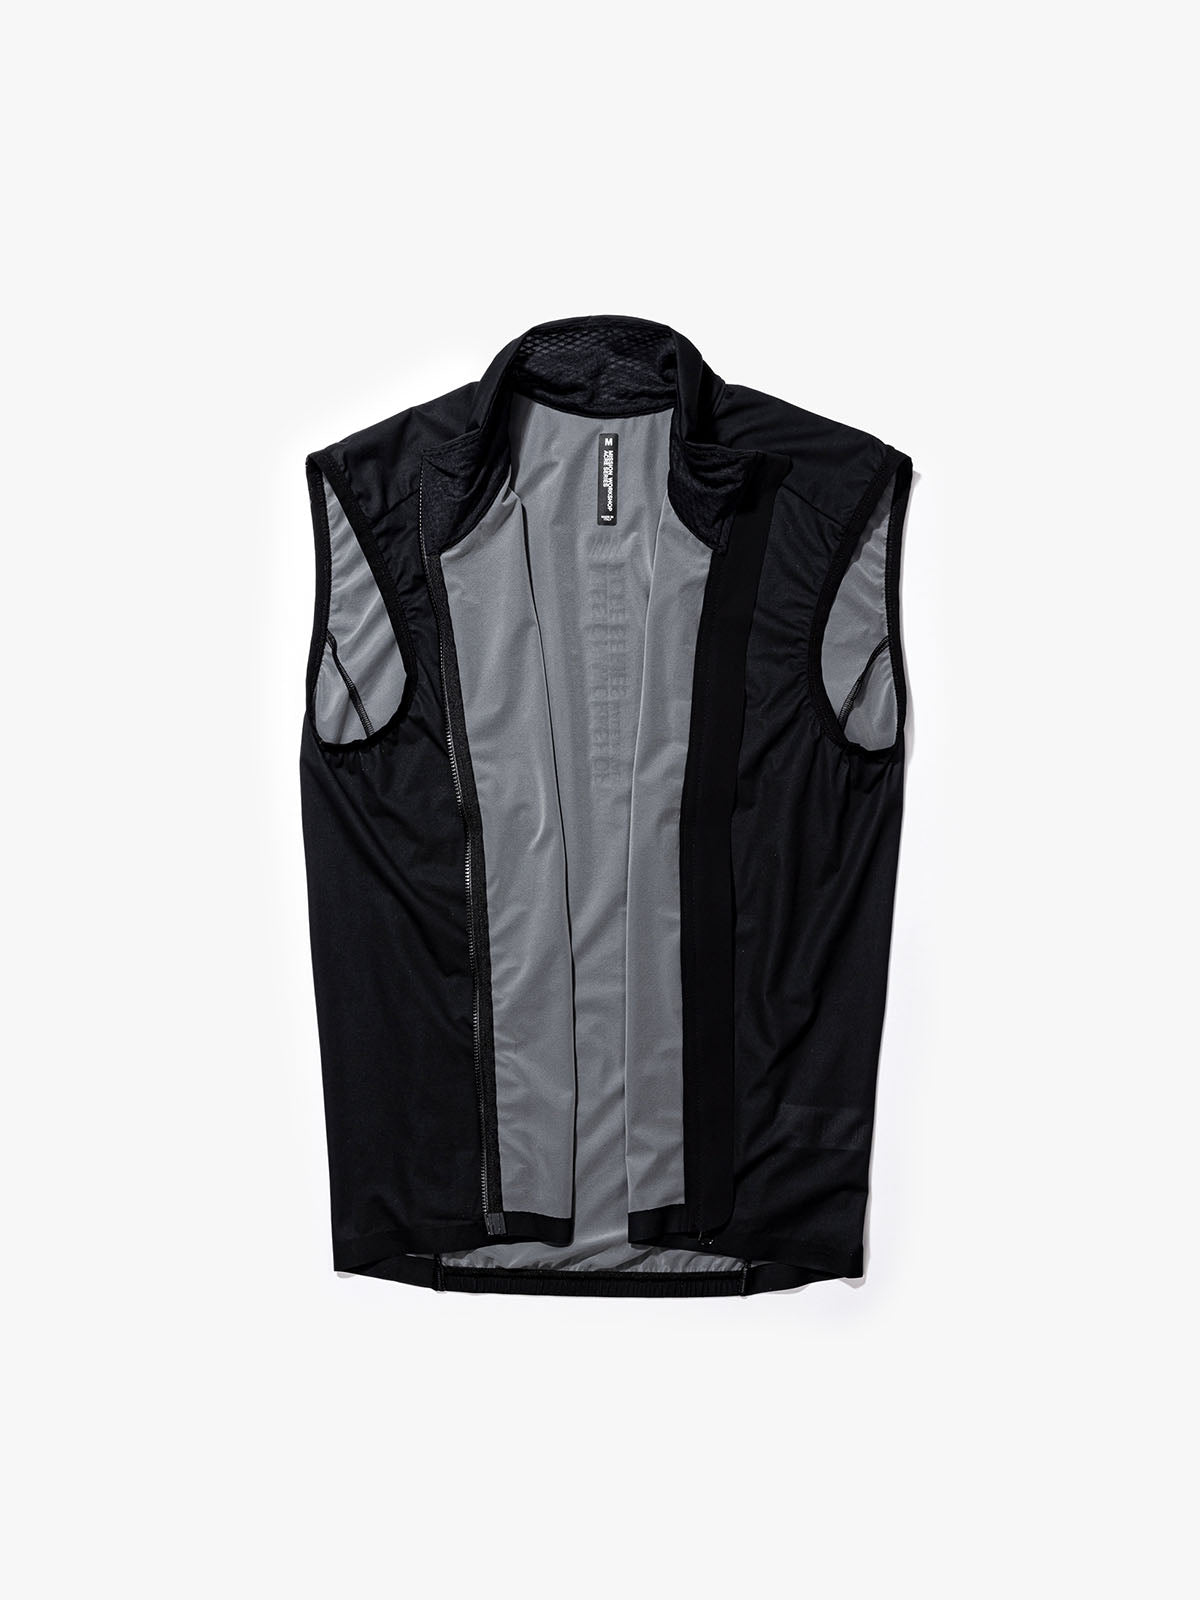 Altosphere Vest by Mission Workshop - Säänkestävät laukut ja tekniset vaatteet - San Francisco & Los Angeles - Rakennettu kestämään - ikuinen takuu